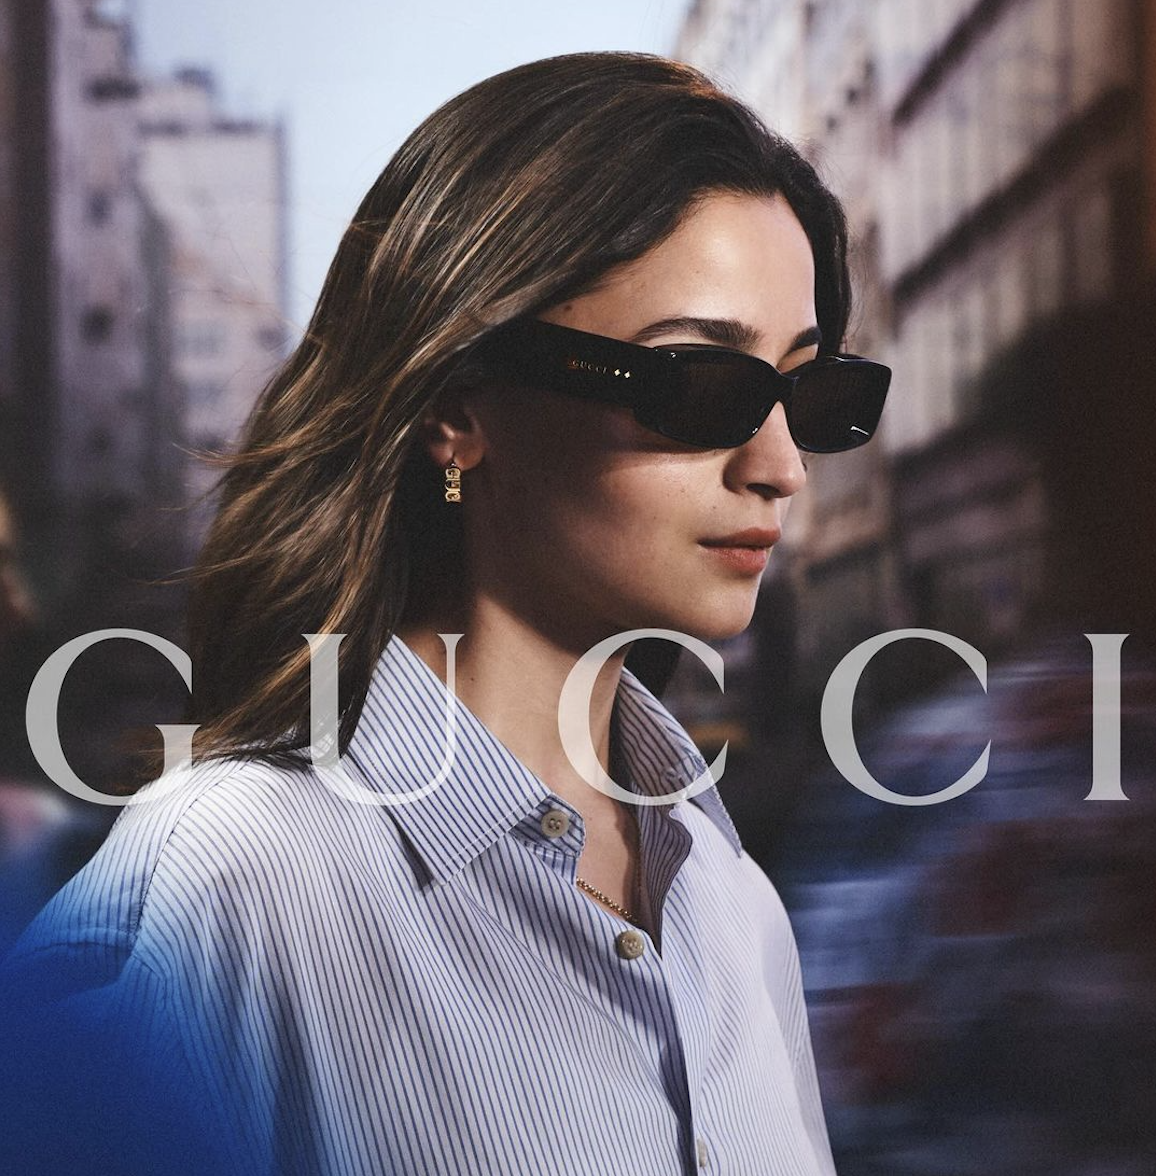 Η Gucci παρουσιάζει τη νέα της συλλογή γυαλιών, εμπνευσμένη από διαχρονικά σχέδια, αλλά με σύγχρονη αισθητική